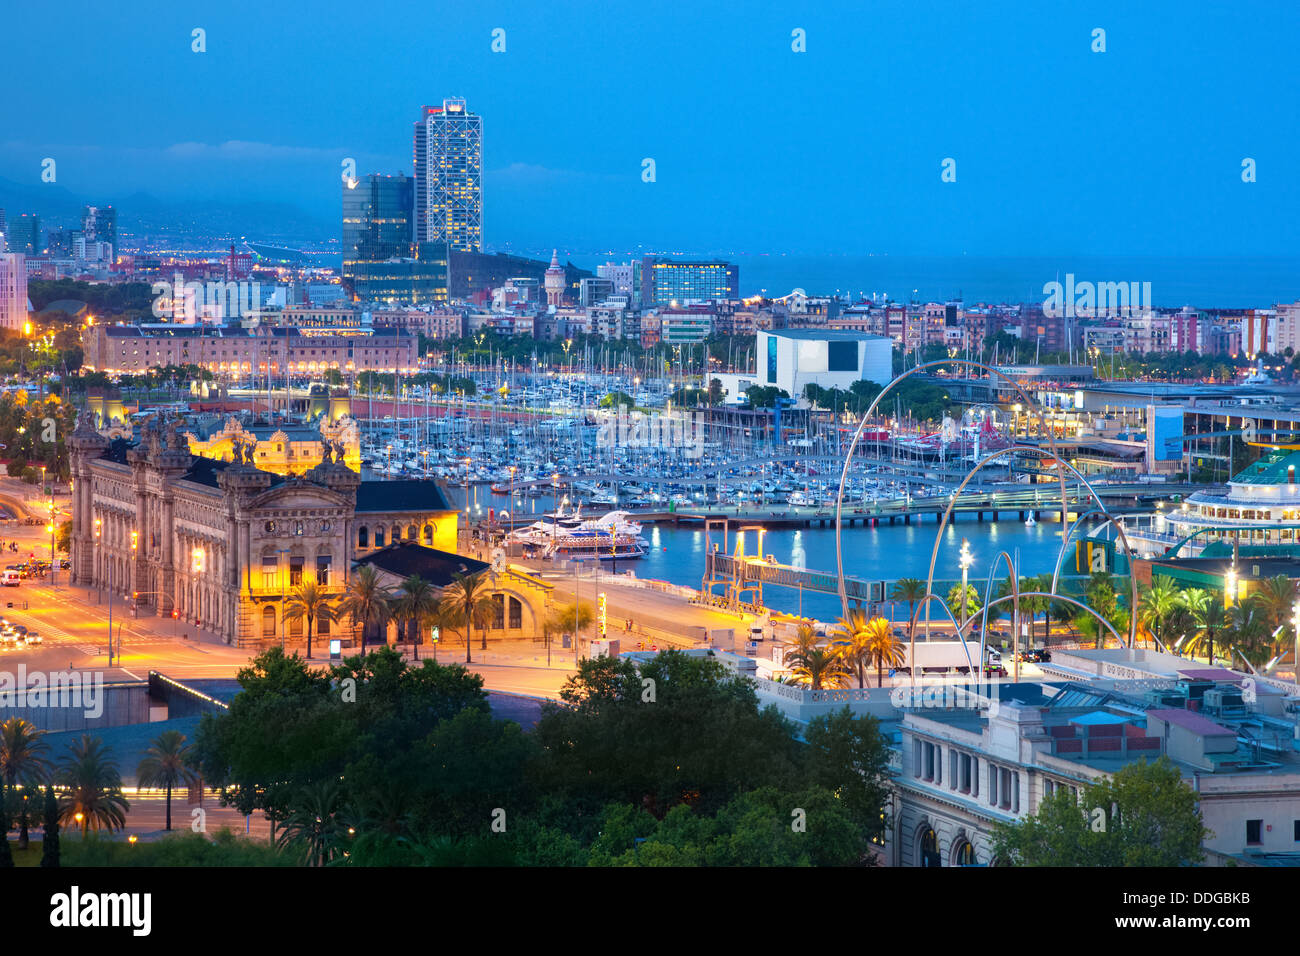 Barcelona, Spanien-Skyline bei Nacht - Blick auf den Hafen Stockfoto